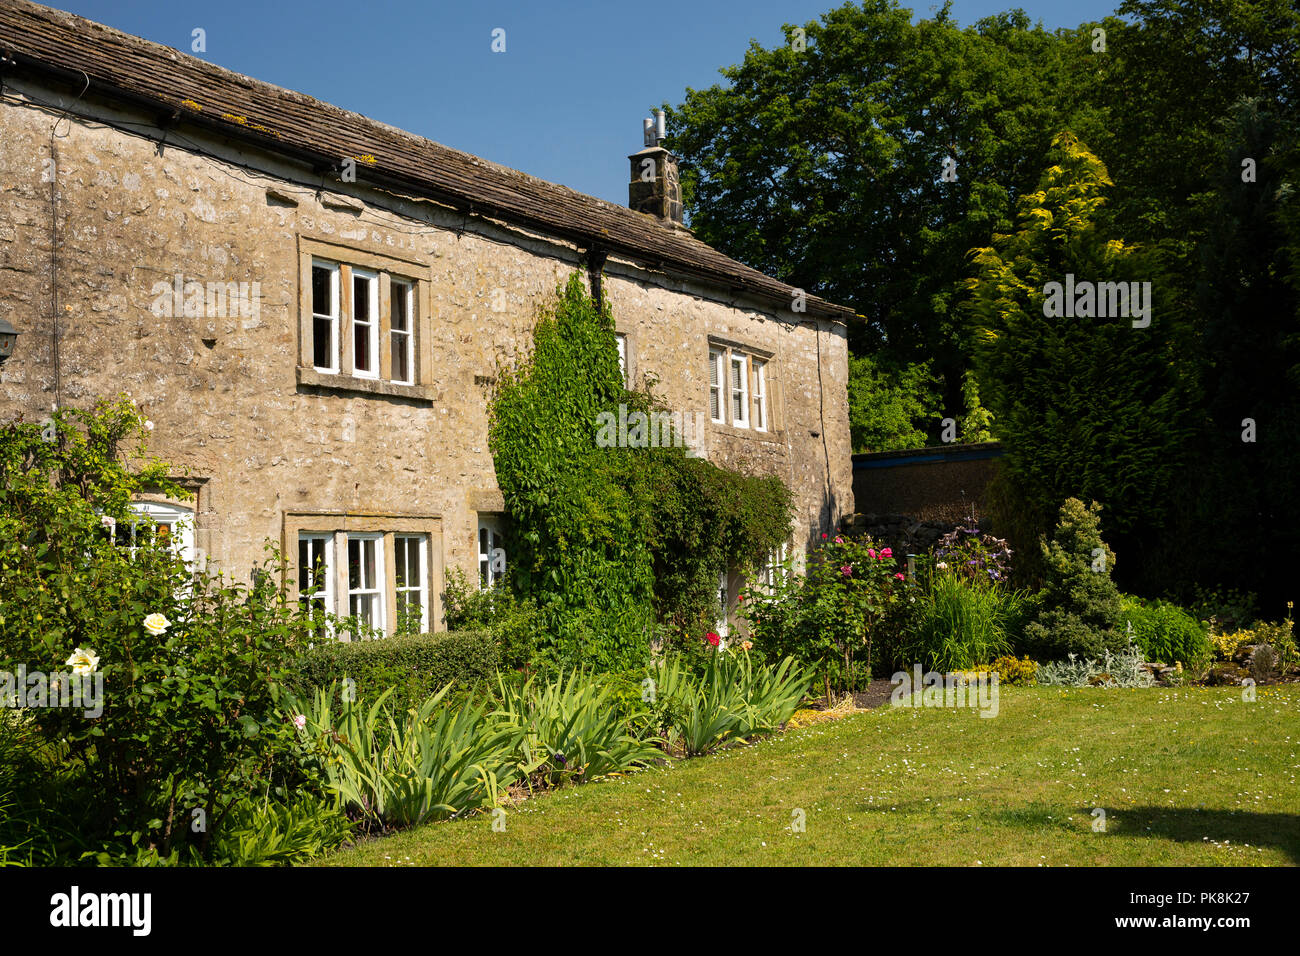 Reino Unido, Yorkshire, Wharfedale, Kettlewell, lejos Lane, atractivo jardín de casa de piedra tradicional Foto de stock